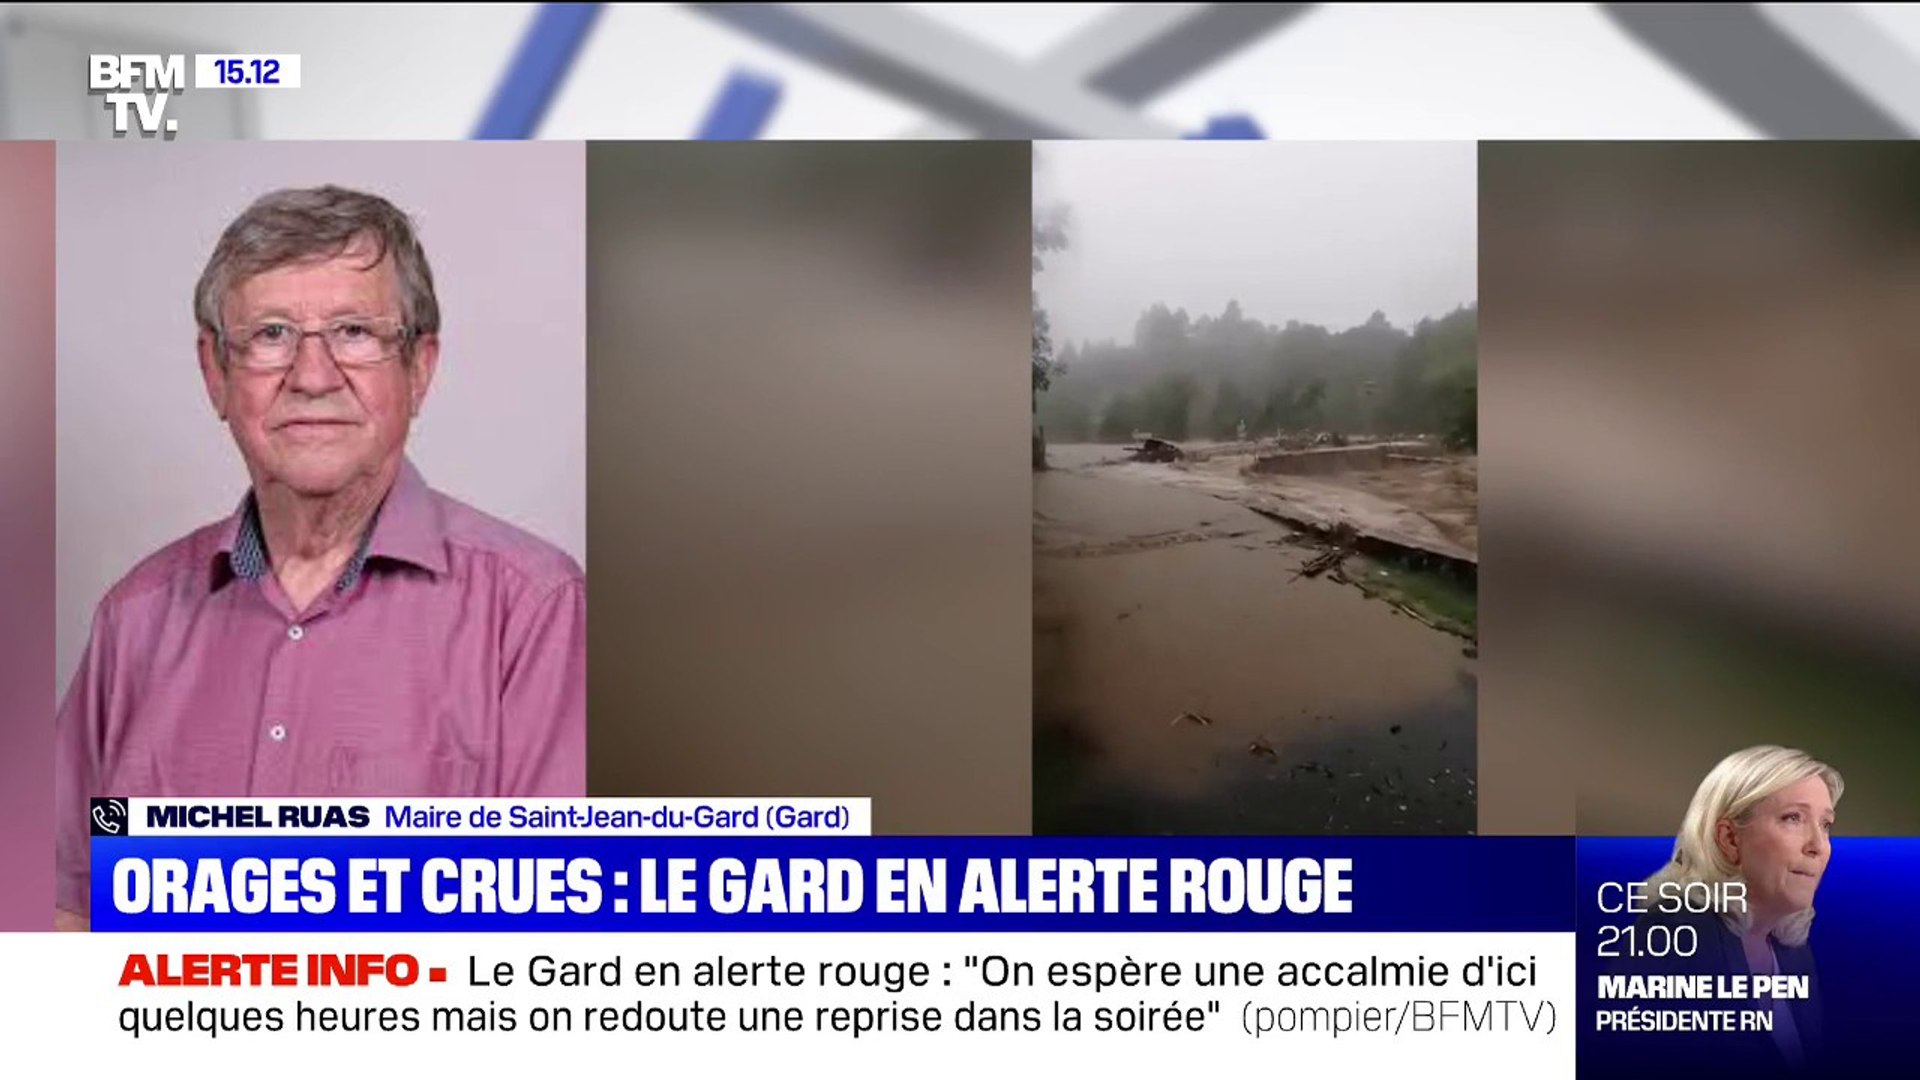 Orages dans le Gard: le maire de Saint-Jean-du-Gard, Michel Ruas, pense  qu'il y aura "énormément de dégâts" - Vidéo Dailymotion